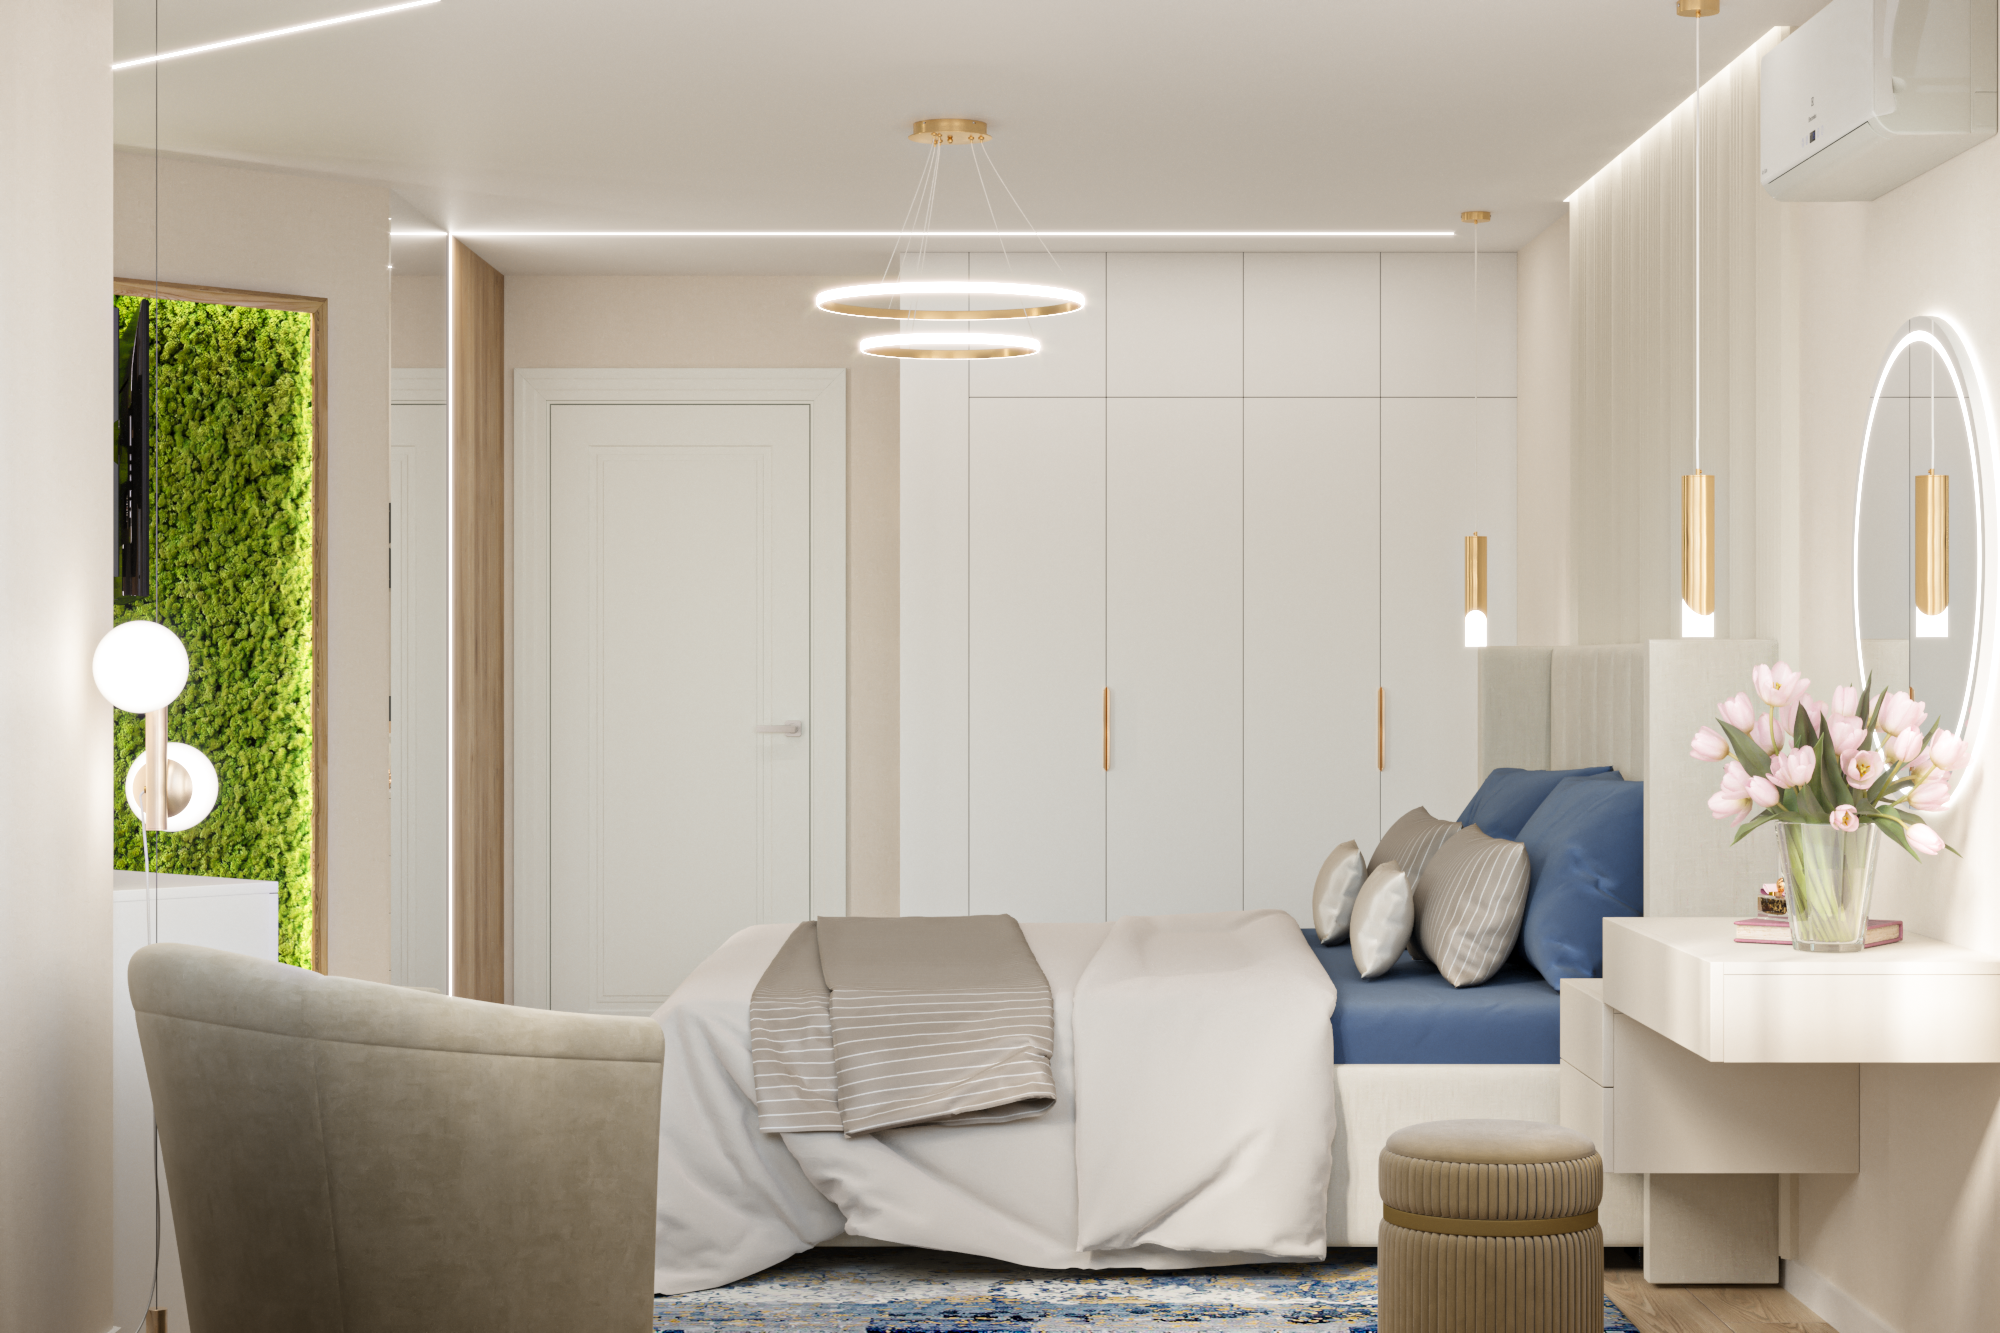 Интерьер спальни cветовыми линиями, рейками с подсветкой, подсветкой светодиодной и светильниками над кроватью